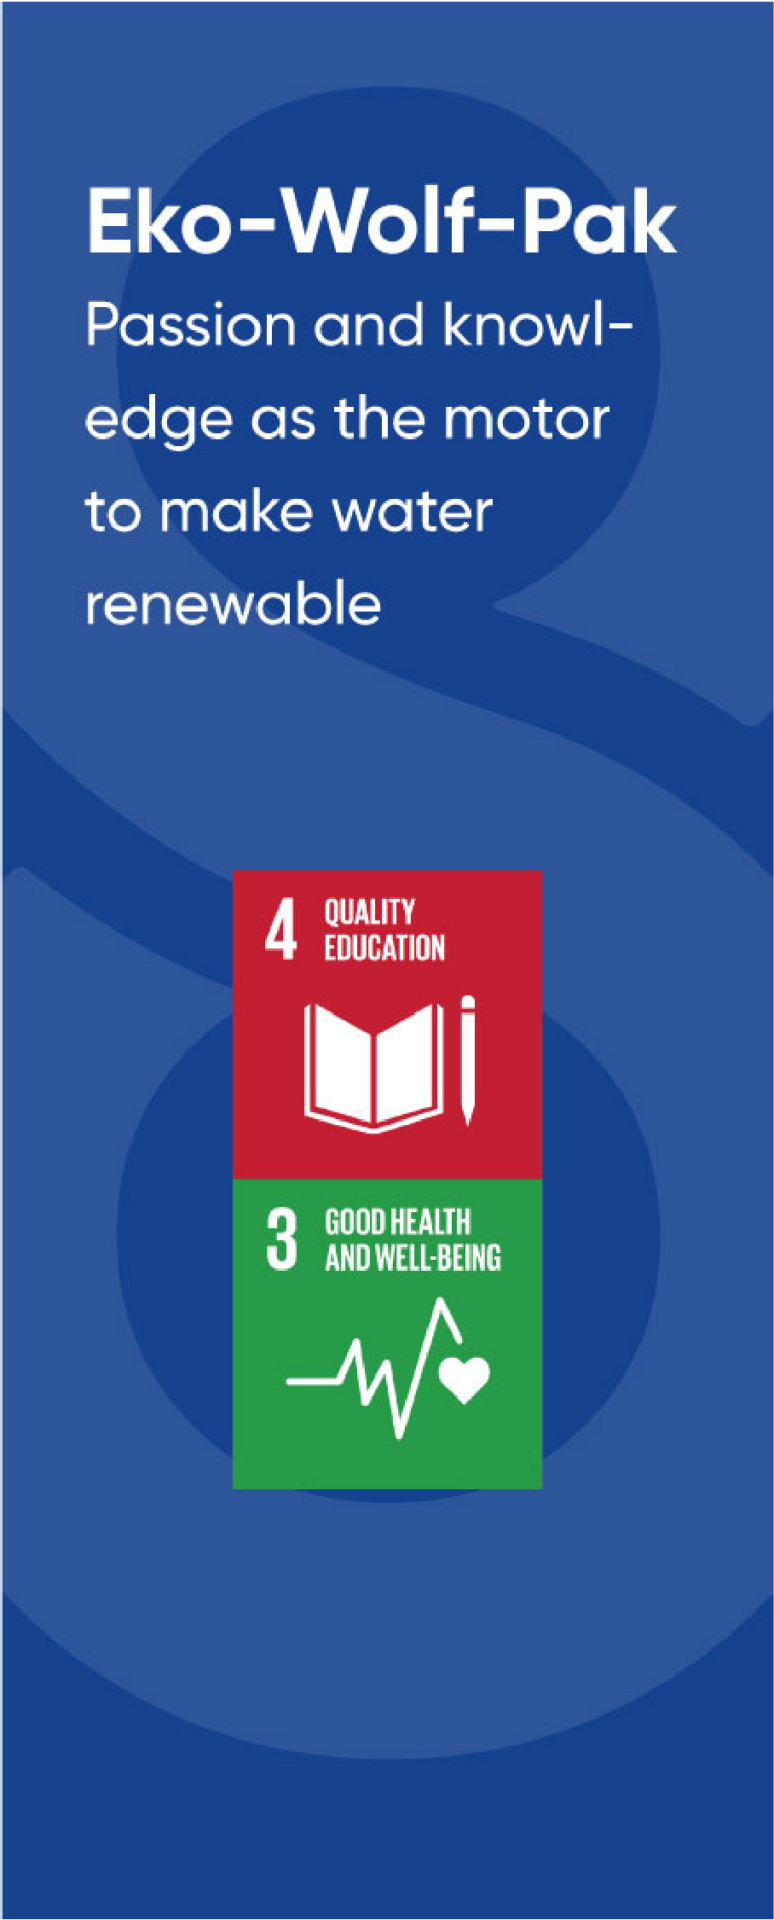 Symbolen van enkele duurzaamheidspijlers: Quality education, Good health and well-being.